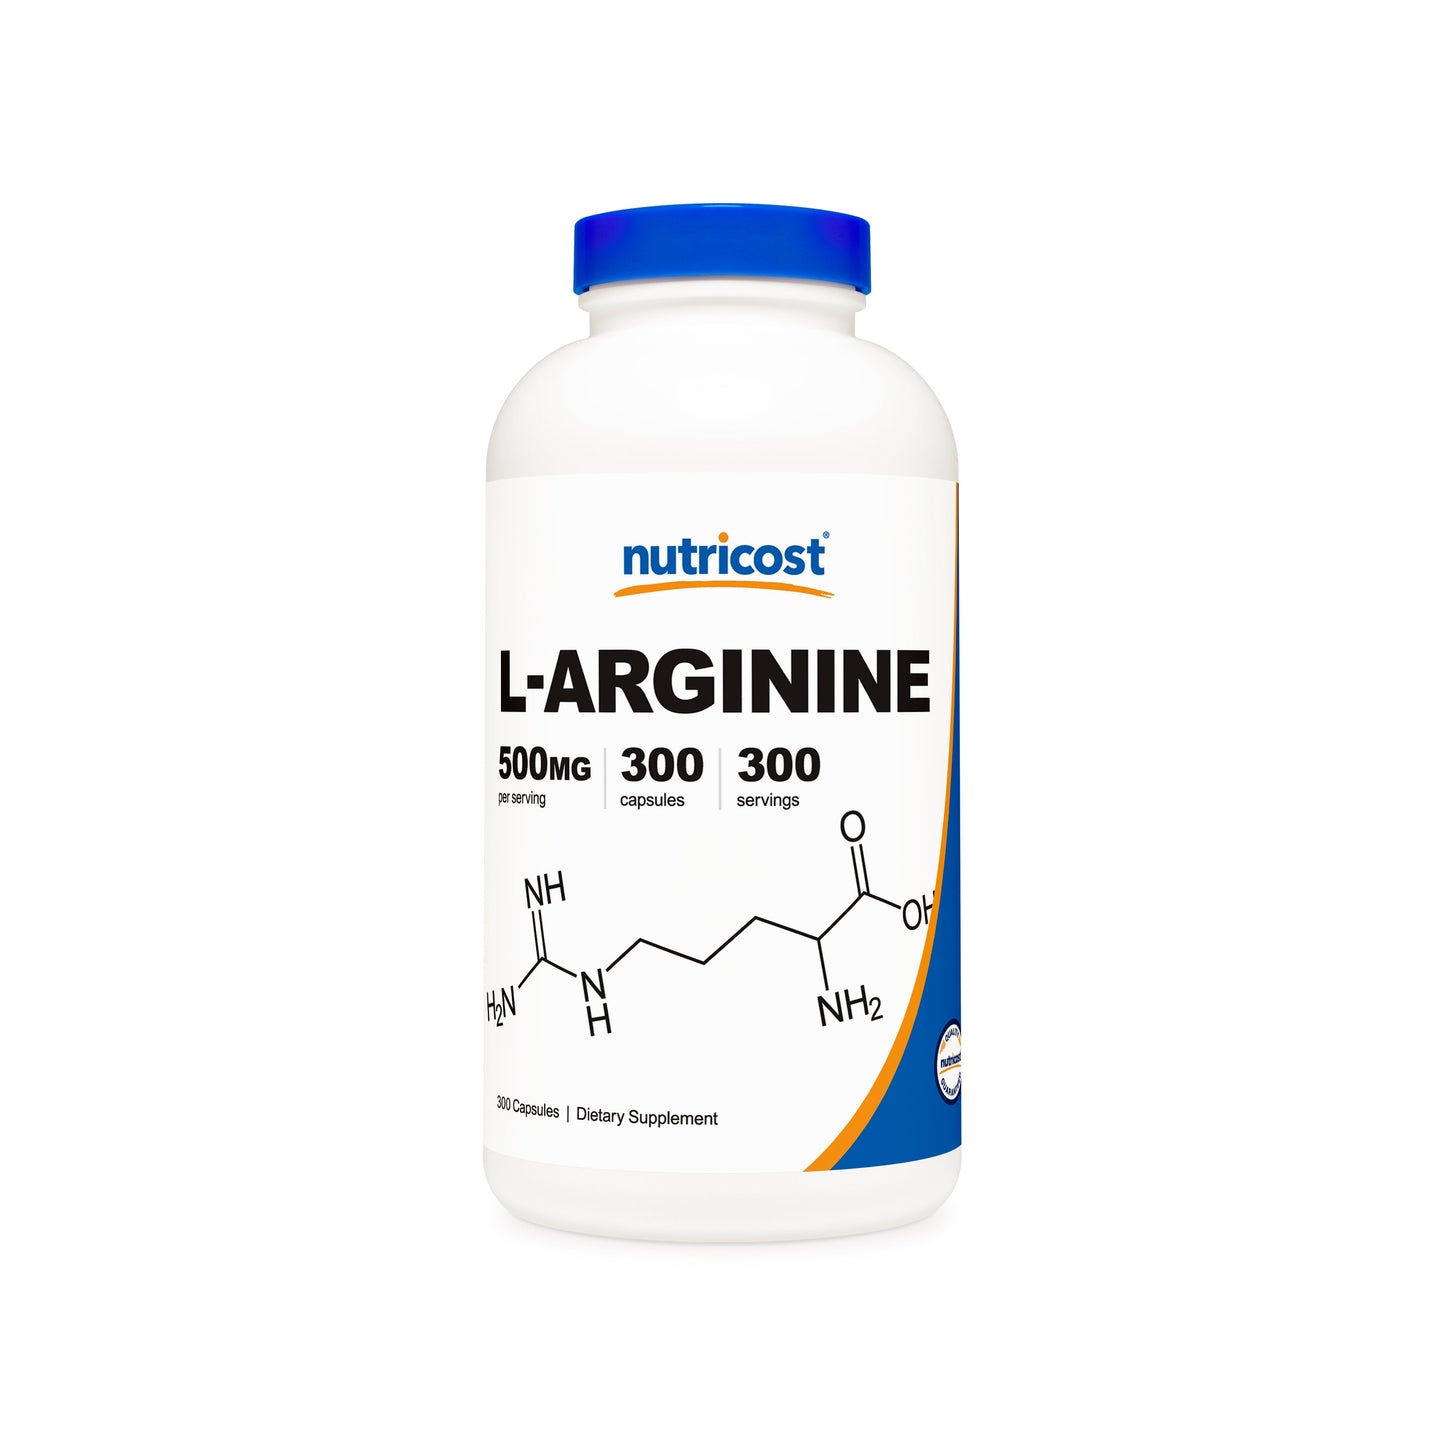 Nutricost L-Arginine Capsules